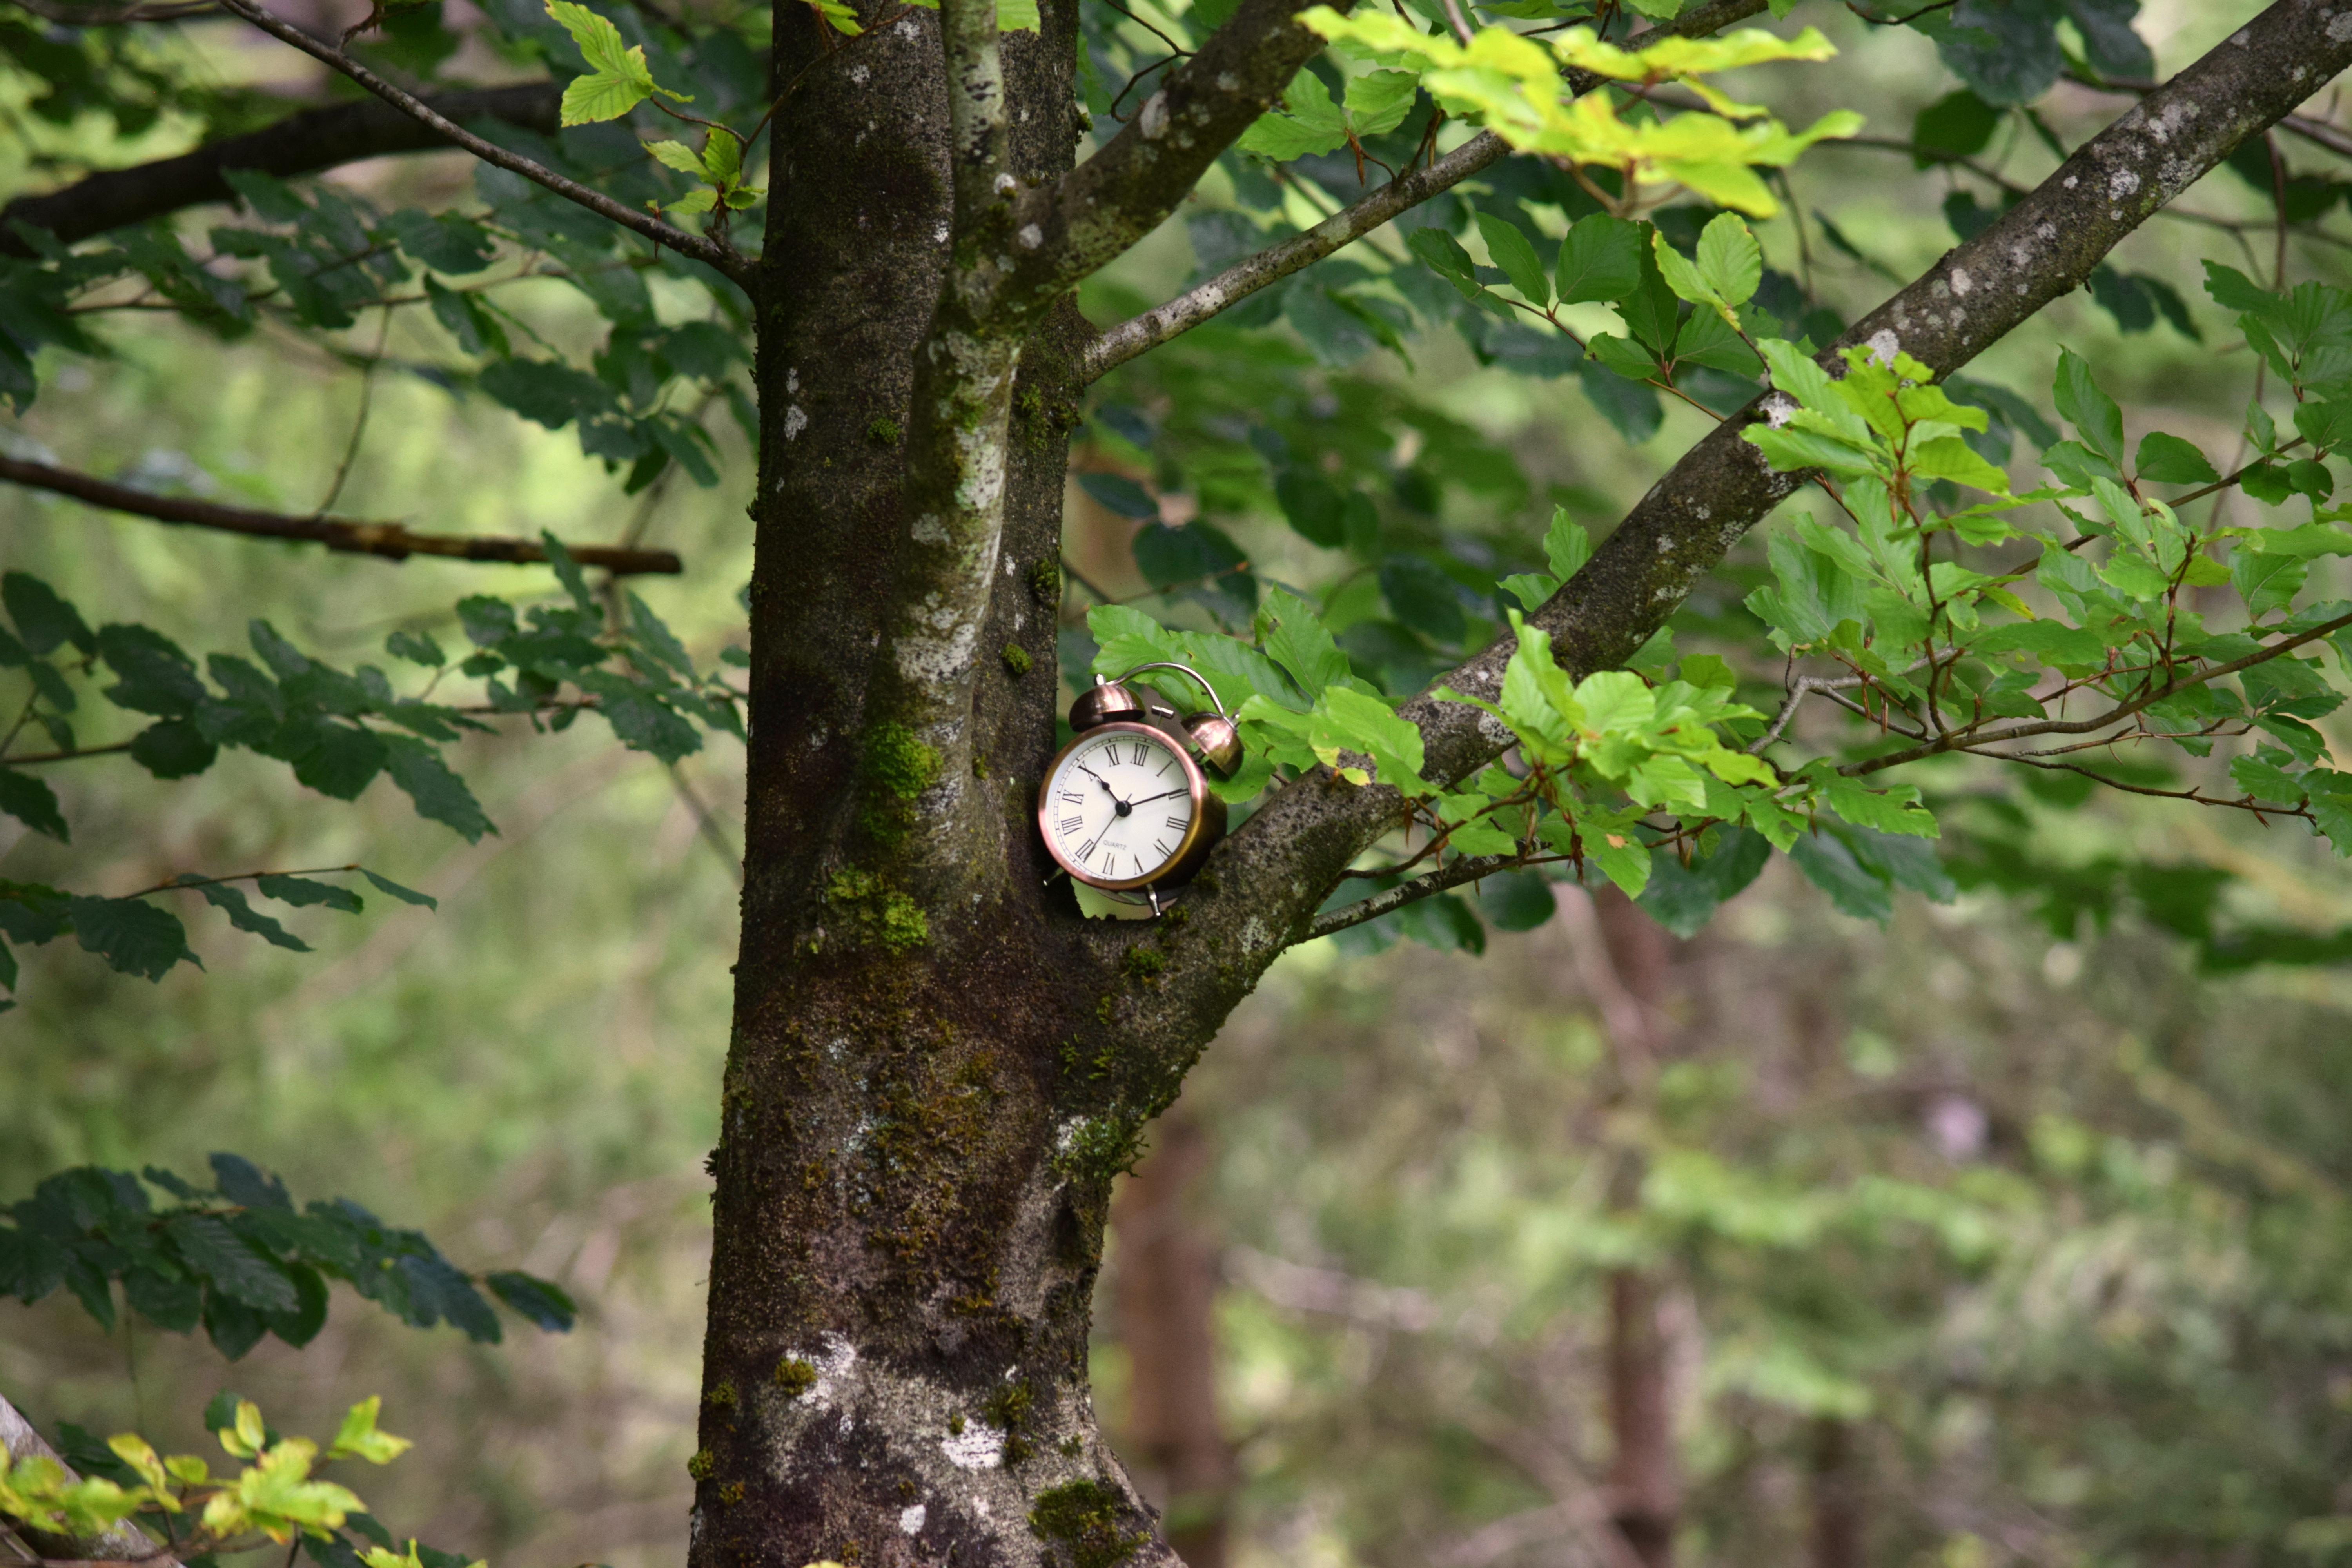 Wecker im Baum | Sie sehen einen kleinen, typischen Wecker, der in einer Baumgabel steckt. Im Hintergrund erkennt man Teile des Waldes, in dem dieser Baum steht.